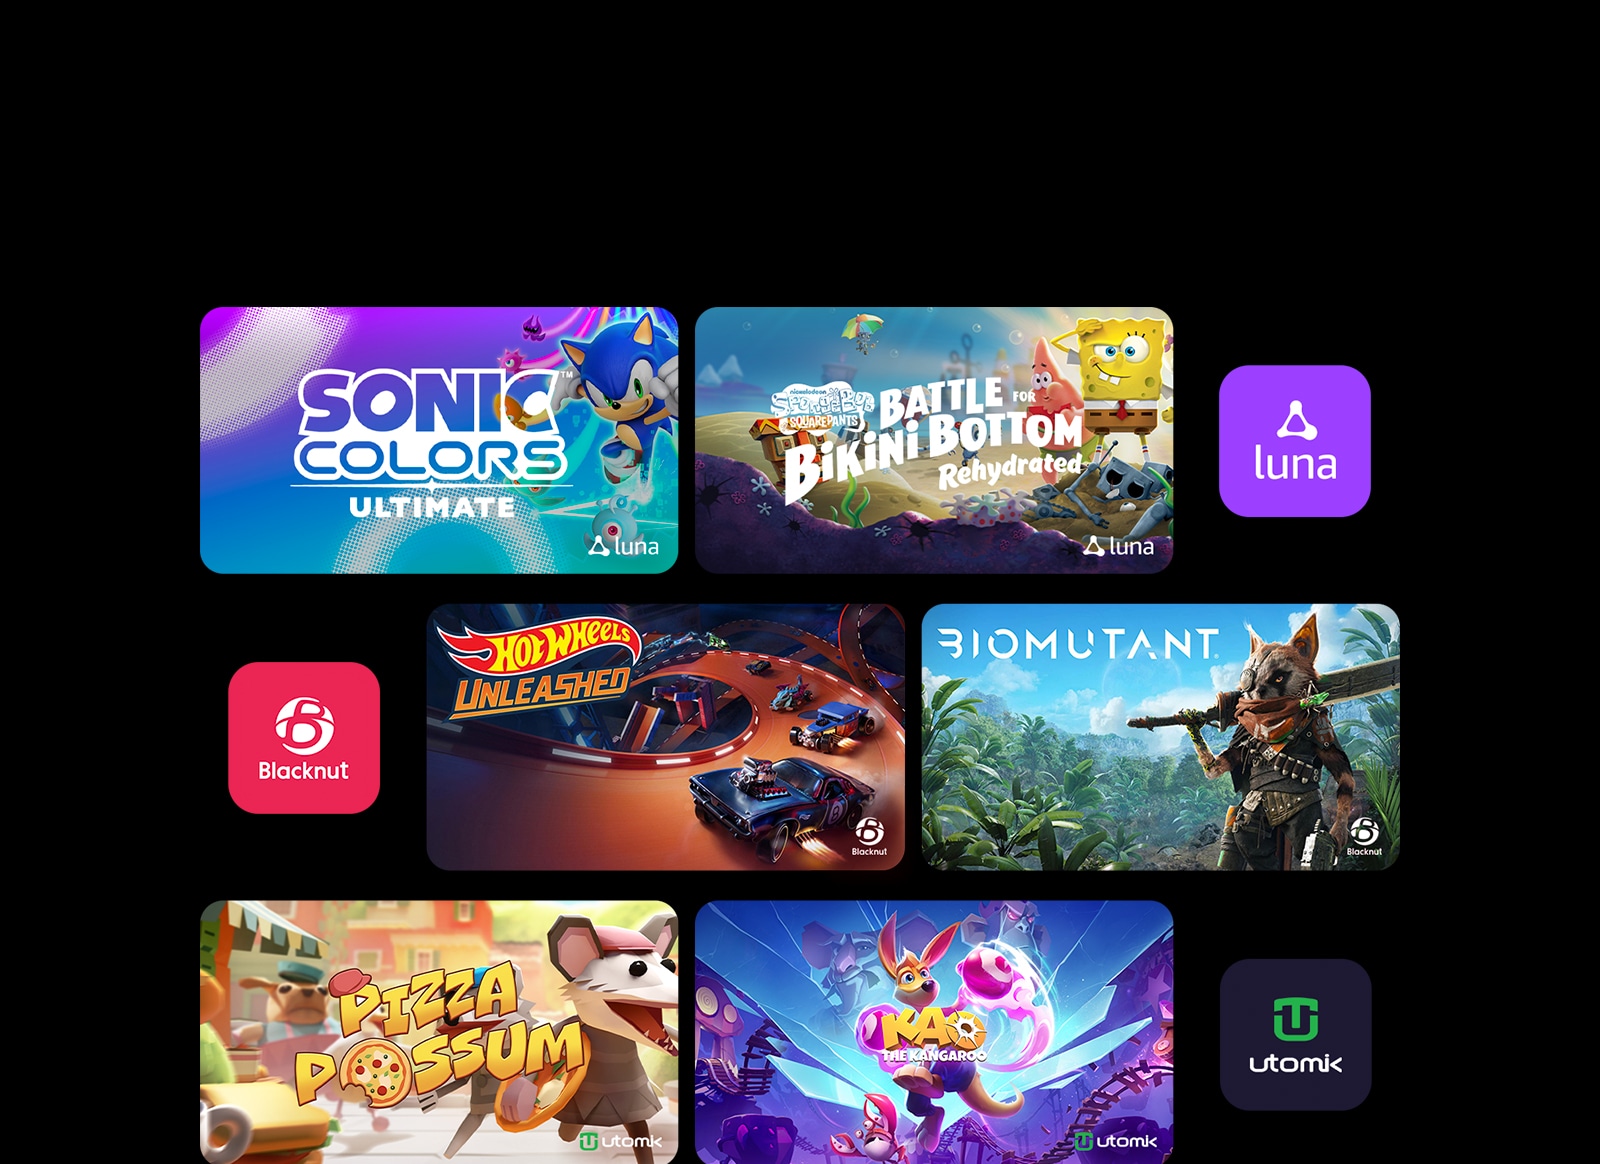 Ексклузивни игрови заглавия на „Sonic Colors: Ultimate“ и „Play SpongeBob: Battle for Bikini Bottom - Rehydrated“ от Luna, „HOT WHEELS UNLEASHED“ и „BIOMUTANT“ от Blacknut, „Pizza Possum“ и „Kao the Kangaroo“ от Utomik. Показаните са платформи за игри в облак.